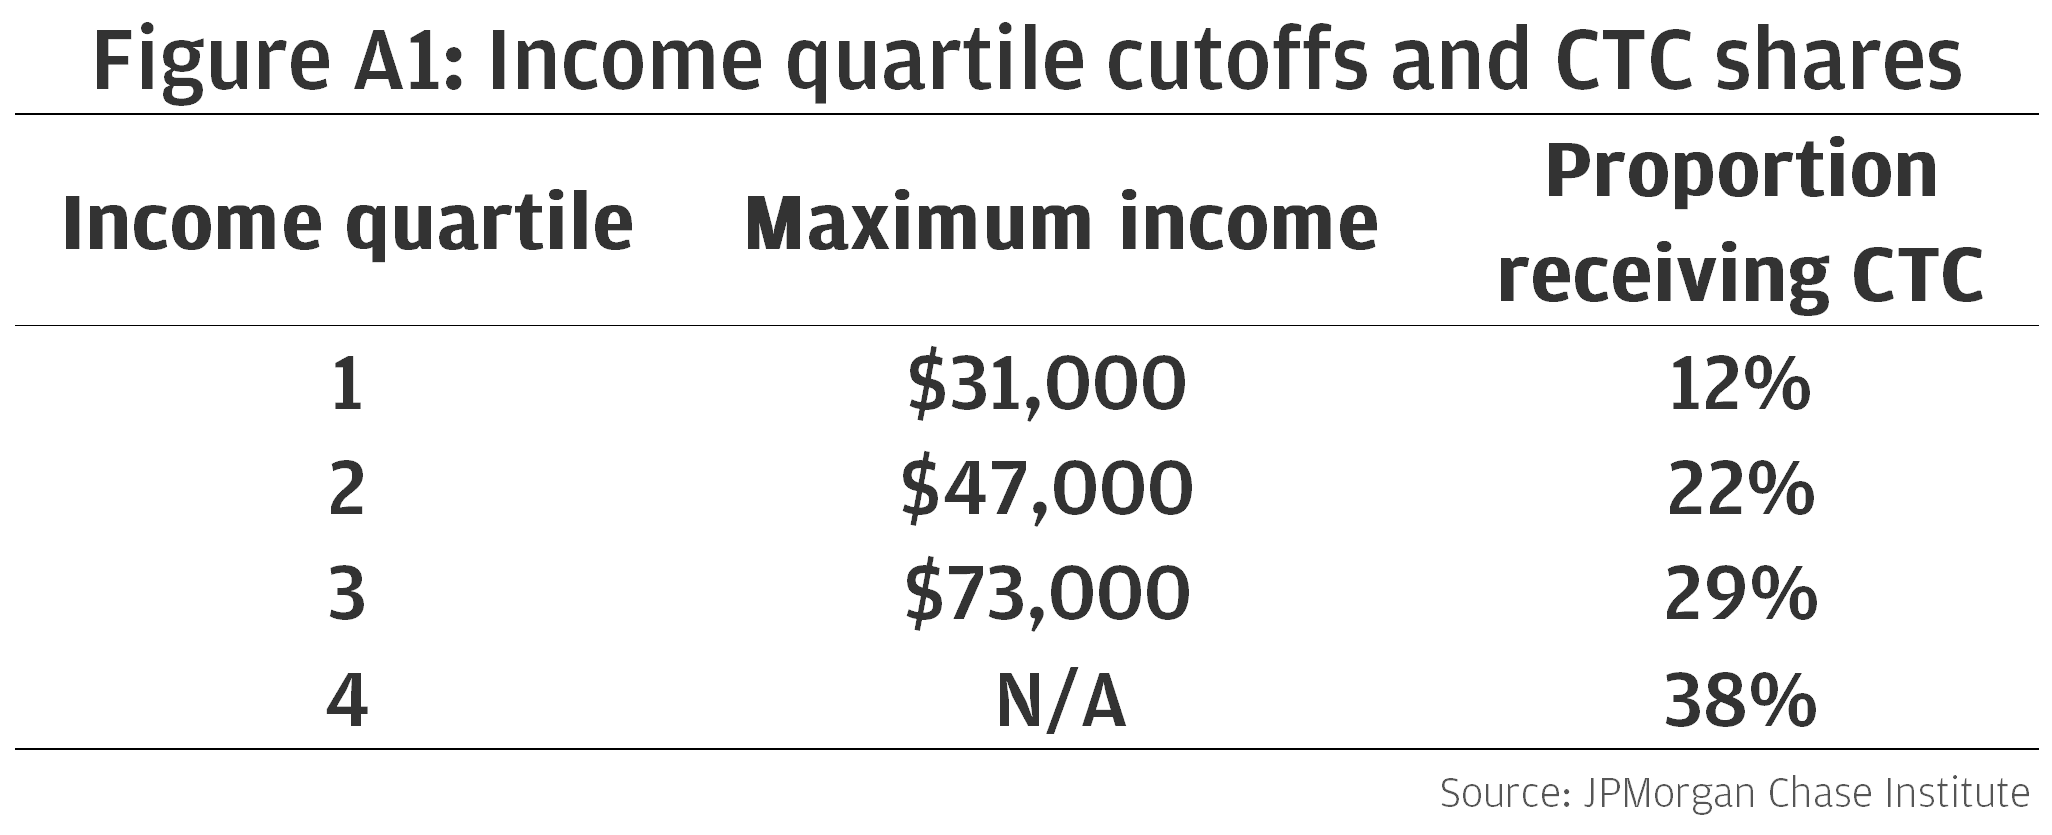 Income quartile cutoffs and CTC shares